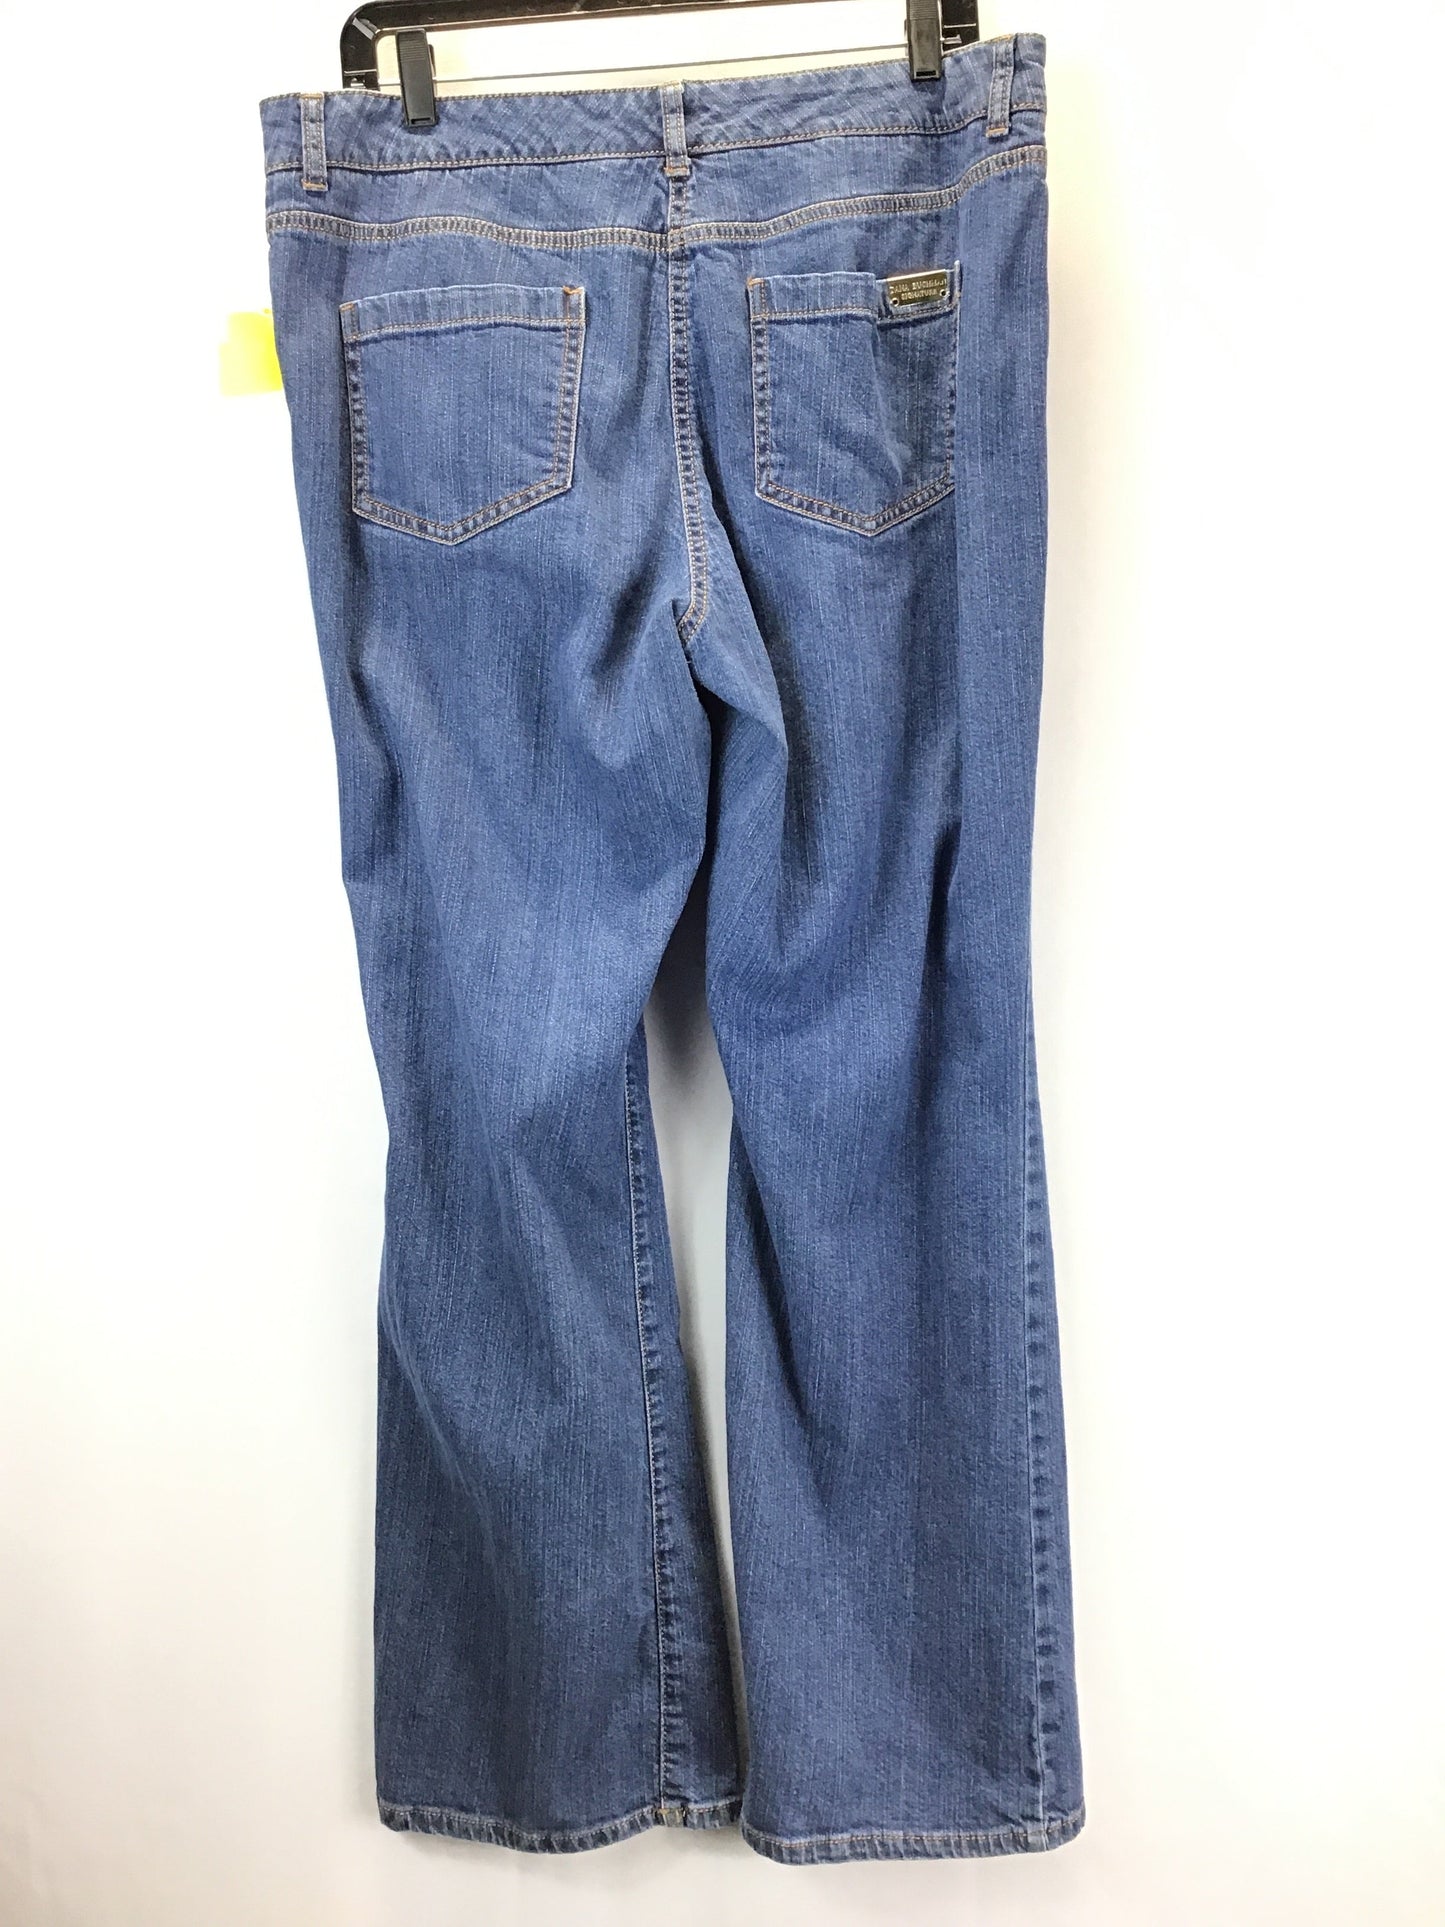 Jeans Boot Cut By Dana Buchman  Size: 14